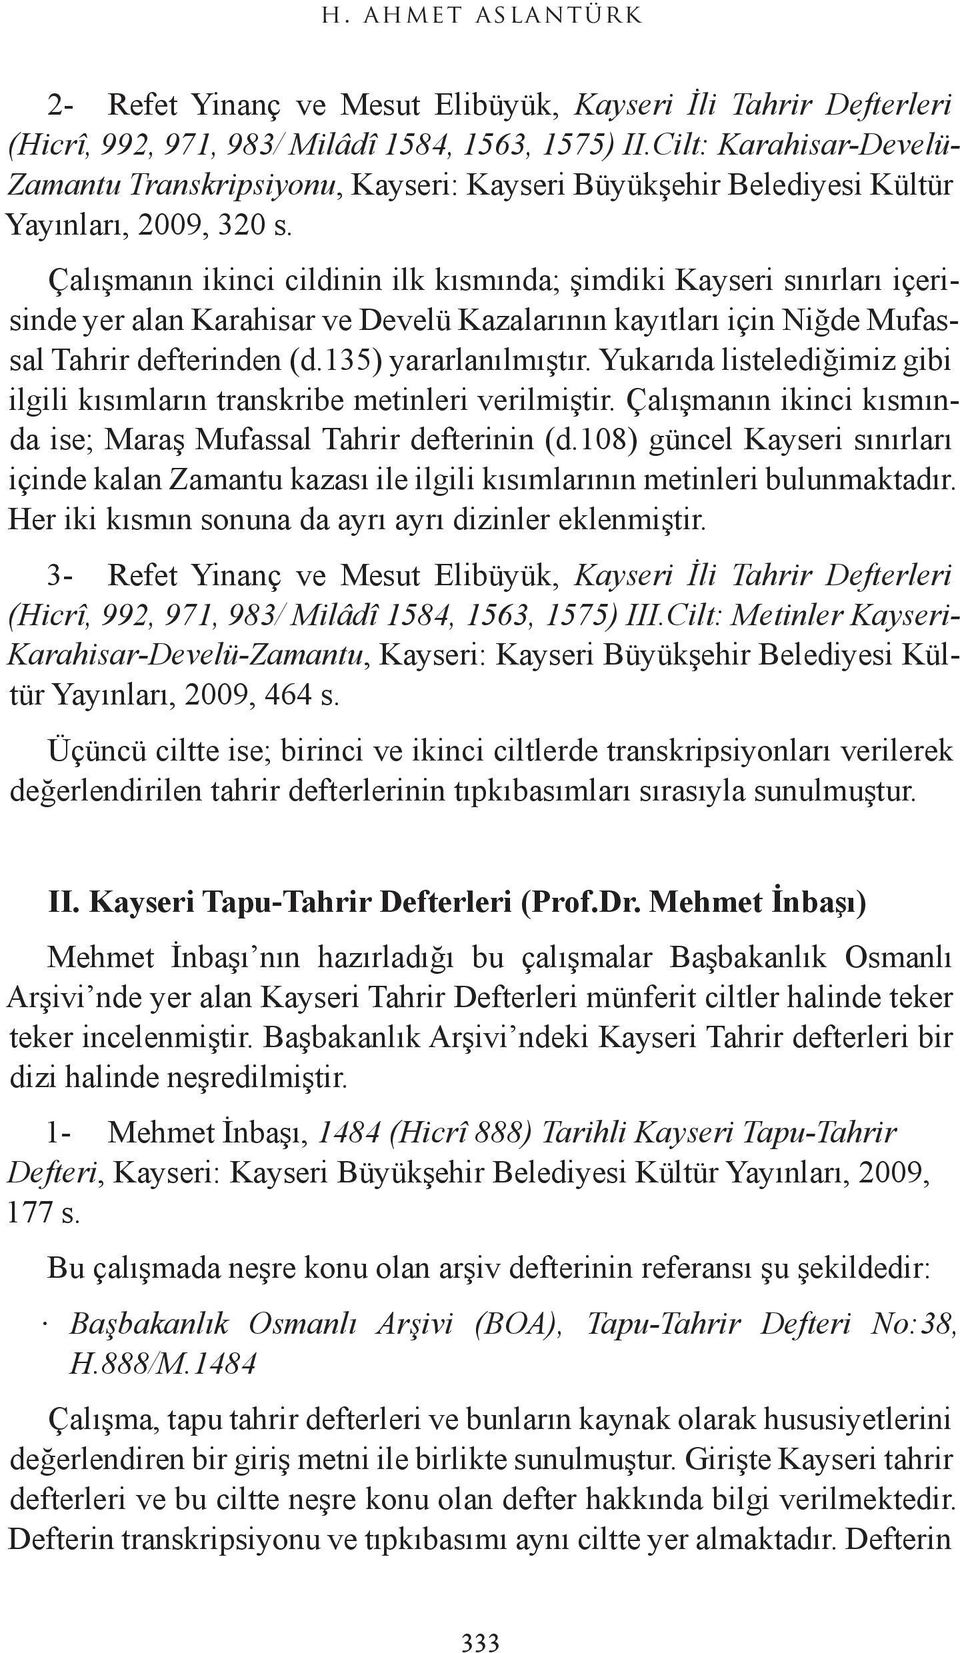 Çalışmanın ikinci cildinin ilk kısmında; şimdiki Kayseri sınırları içerisinde yer alan Karahisar ve Develü Kazalarının kayıtları için Niğde Mufassal Tahrir defterinden (d.135) yararlanılmıştır.